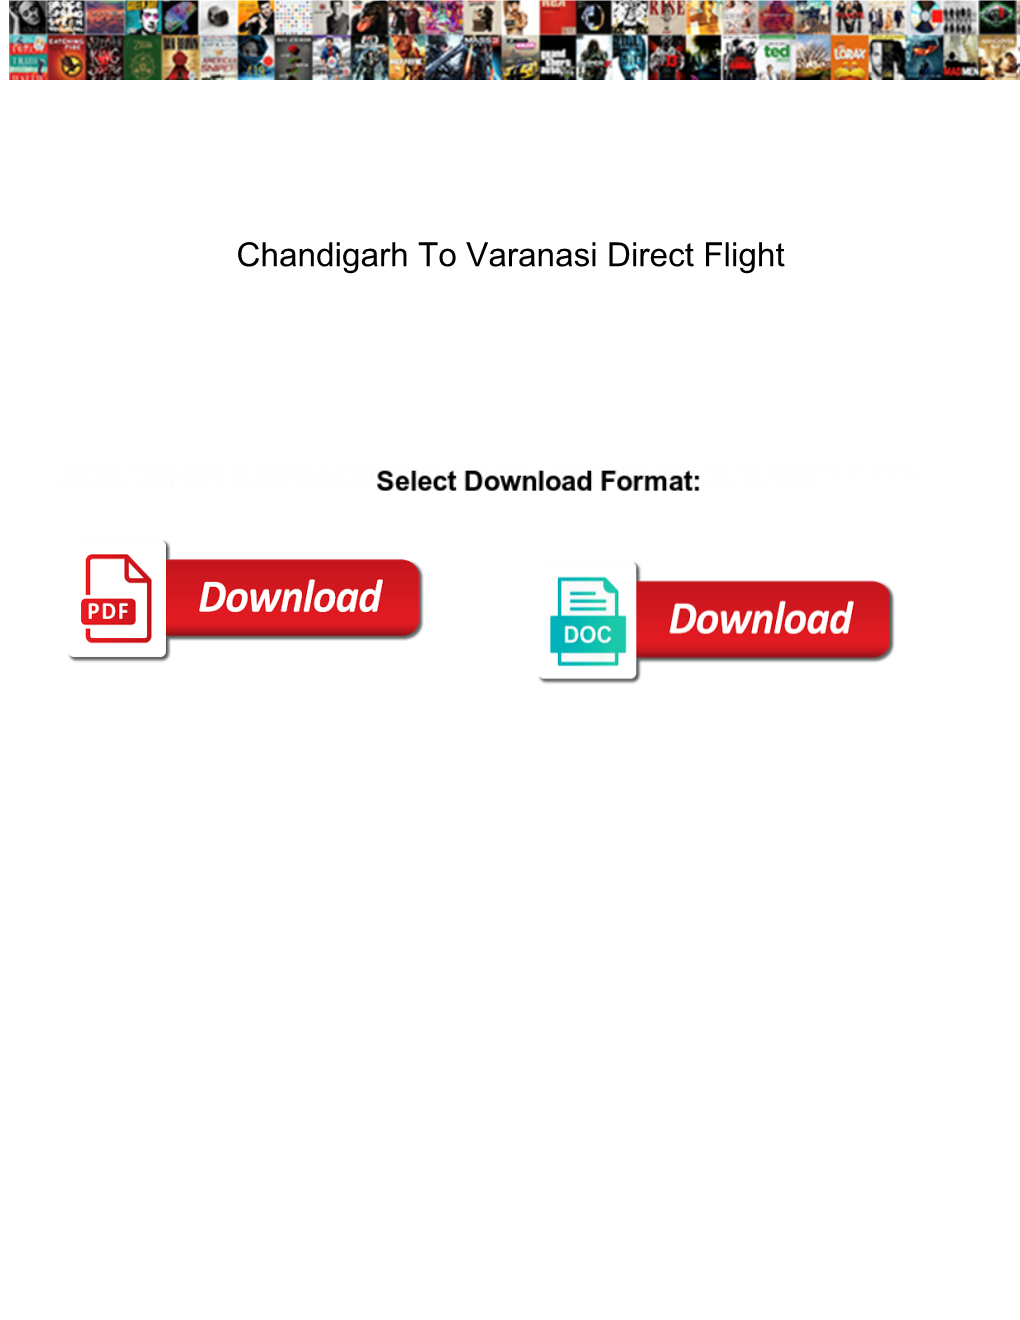 Chandigarh to Varanasi Direct Flight